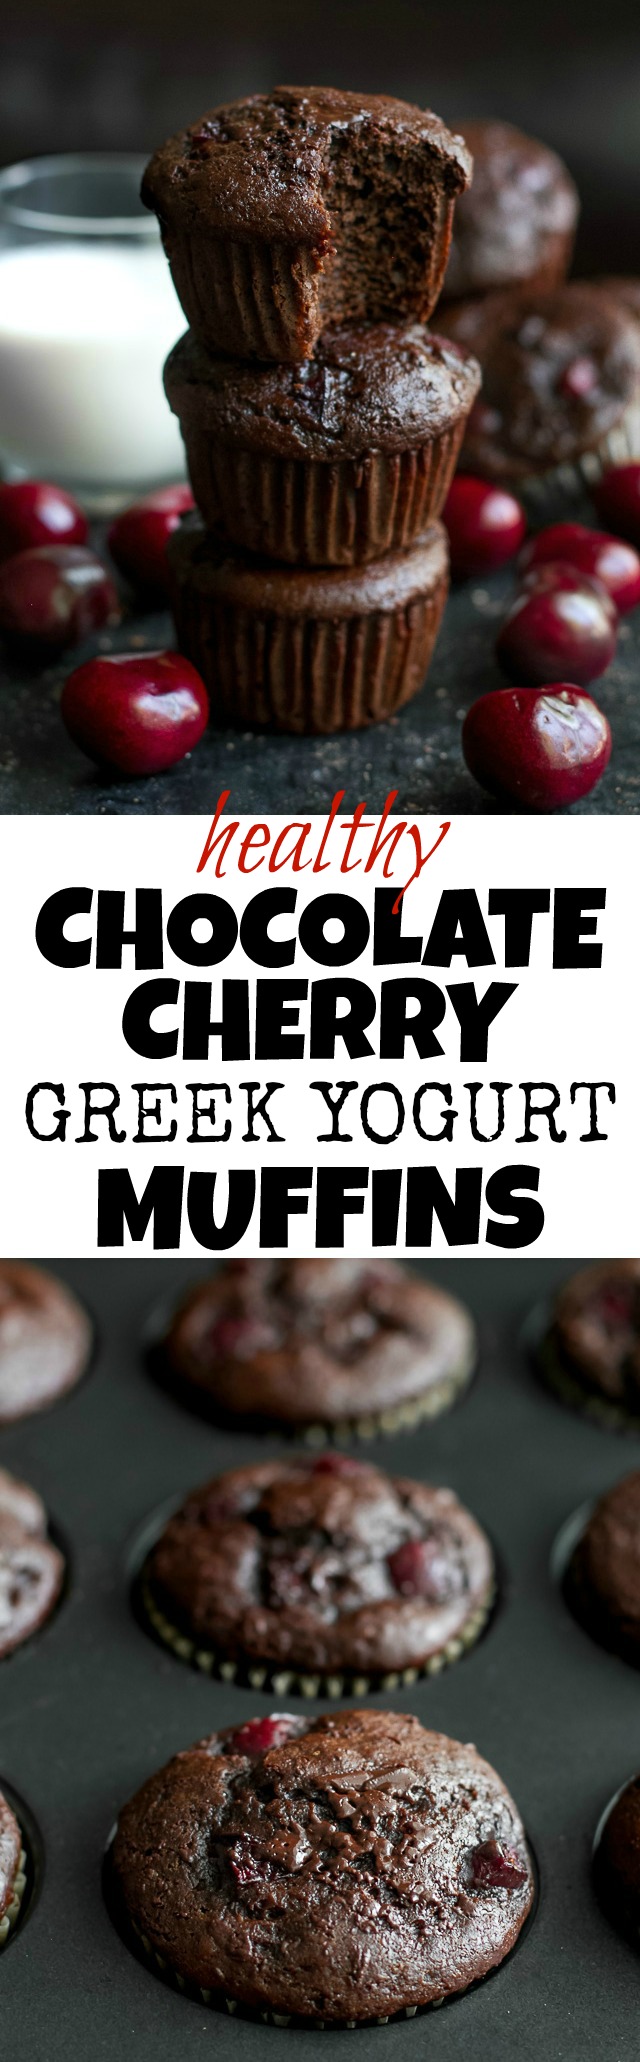 Chocolate Cherry Greek Yogurt Muffins Running With Spoons